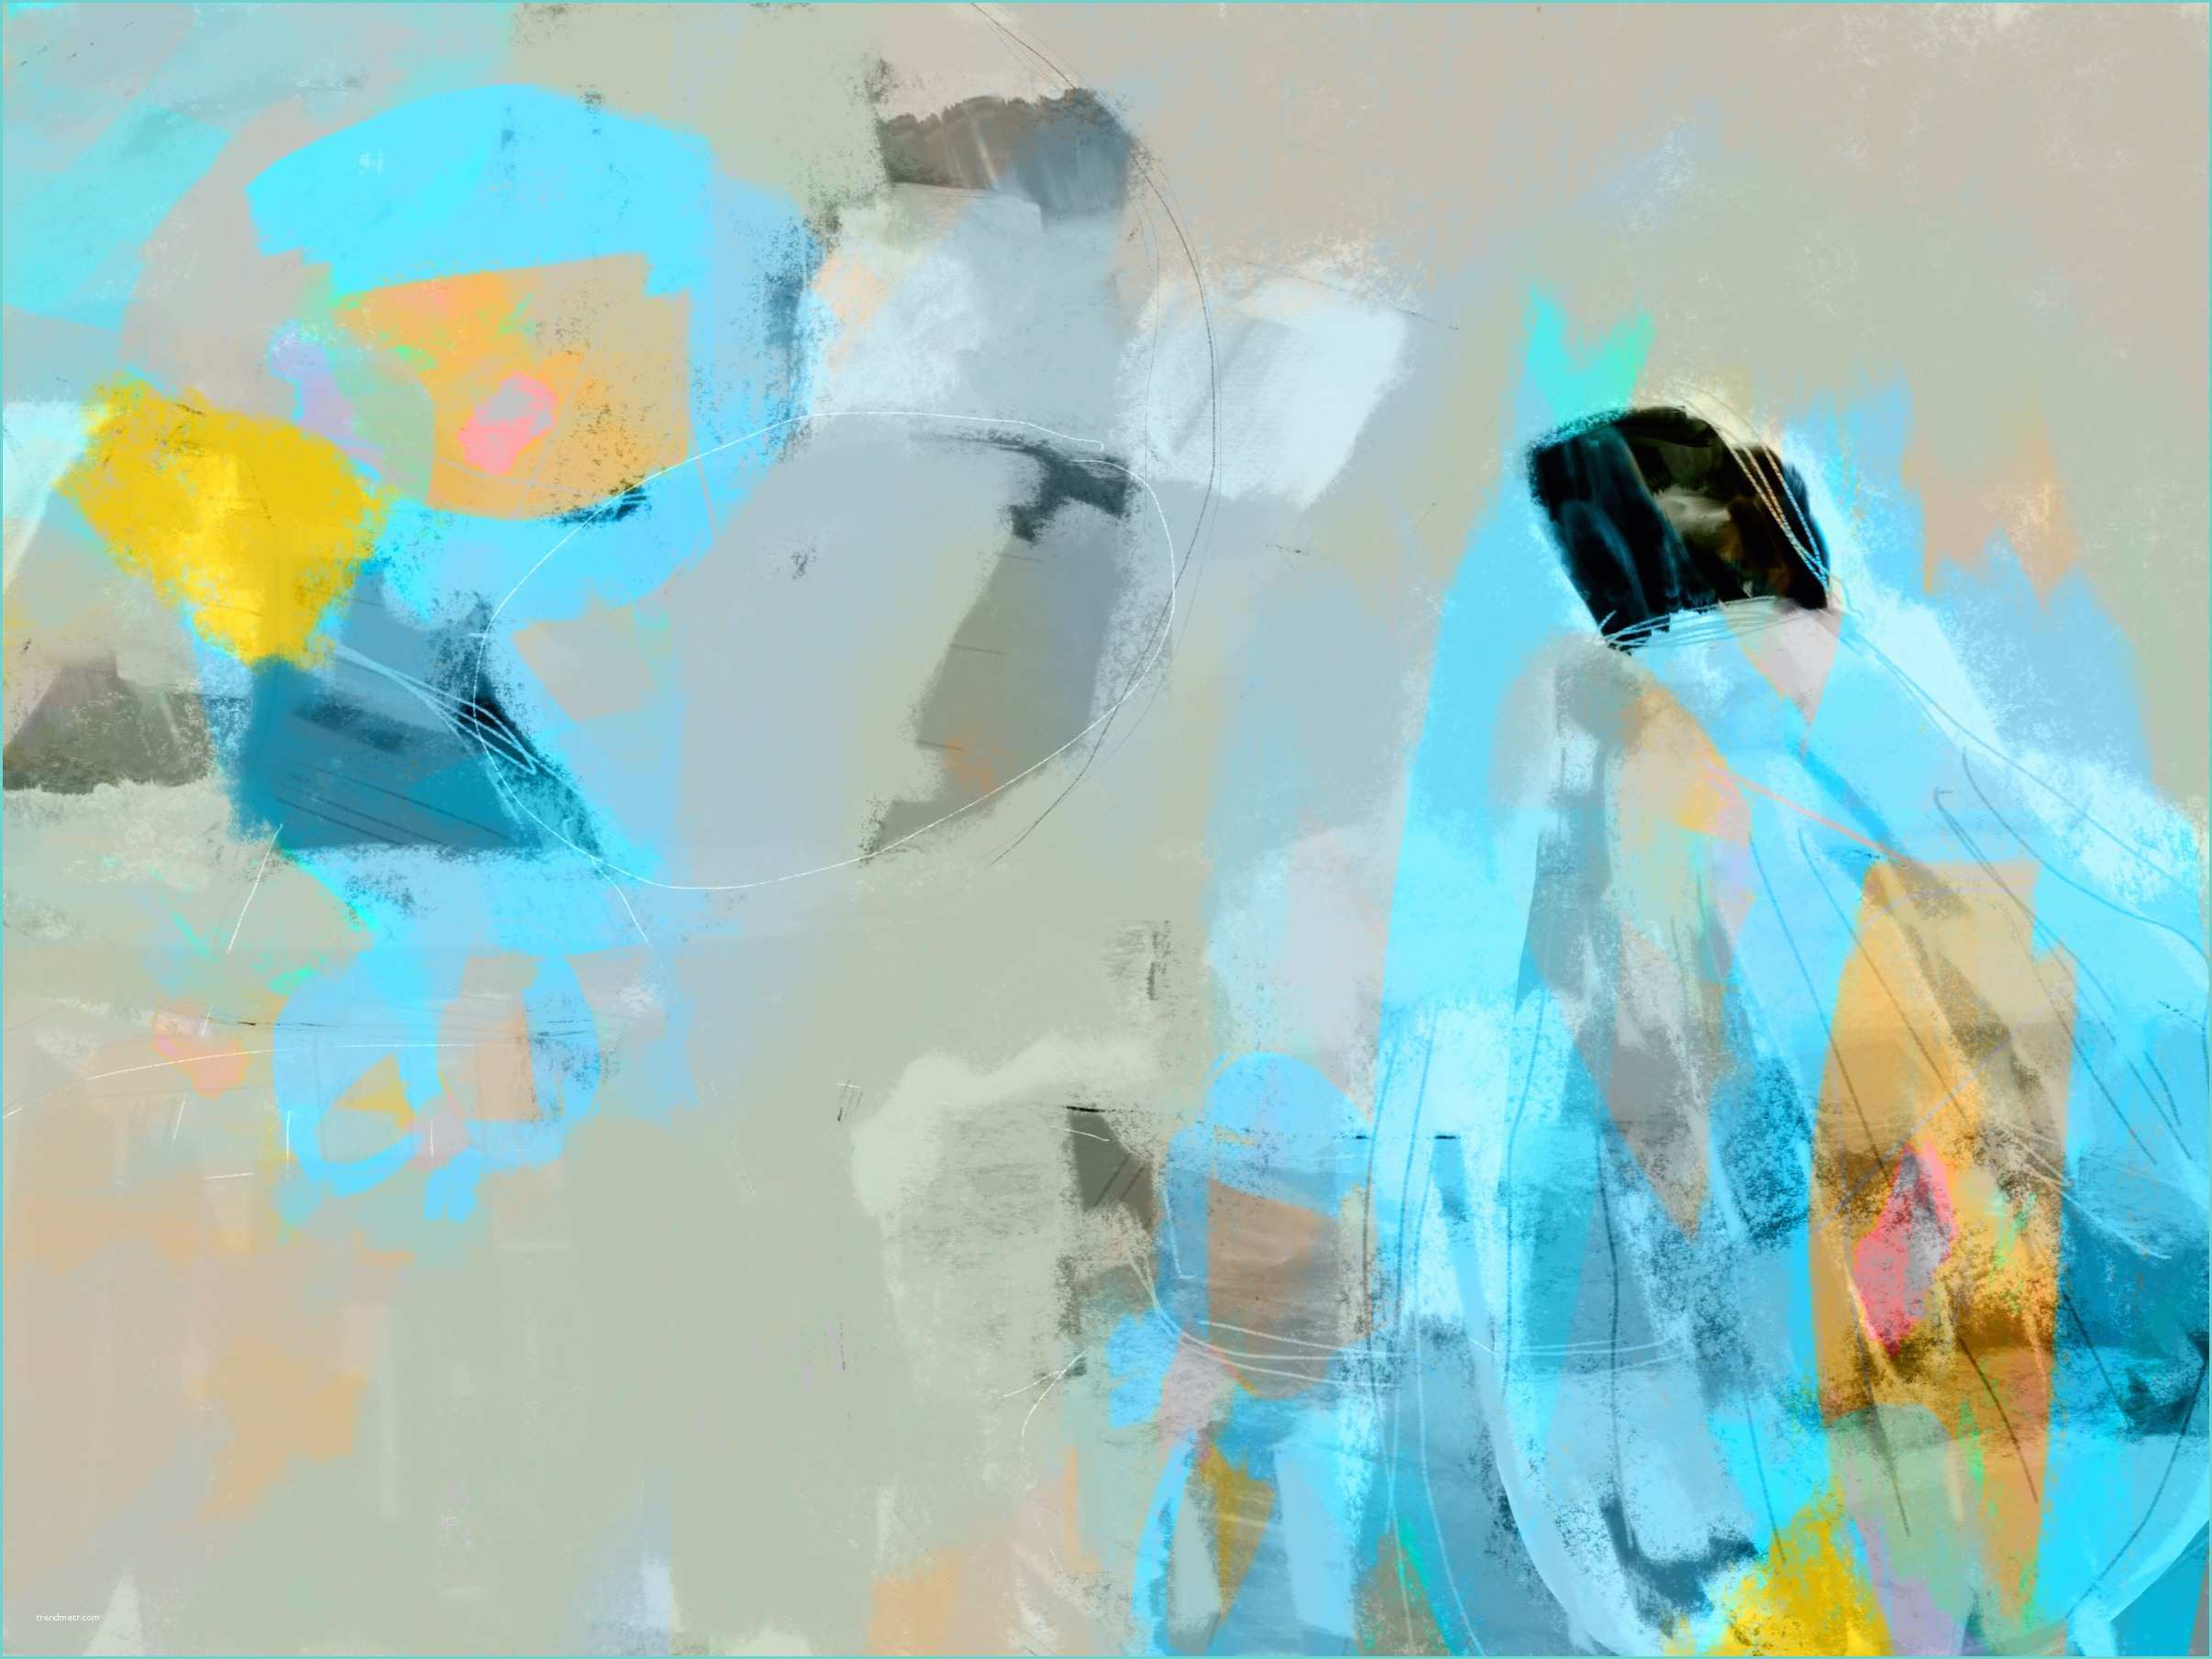 Tableau Abstrait Couleur Vive Envol Pastel 3 by Octave Pixel 2014 Print